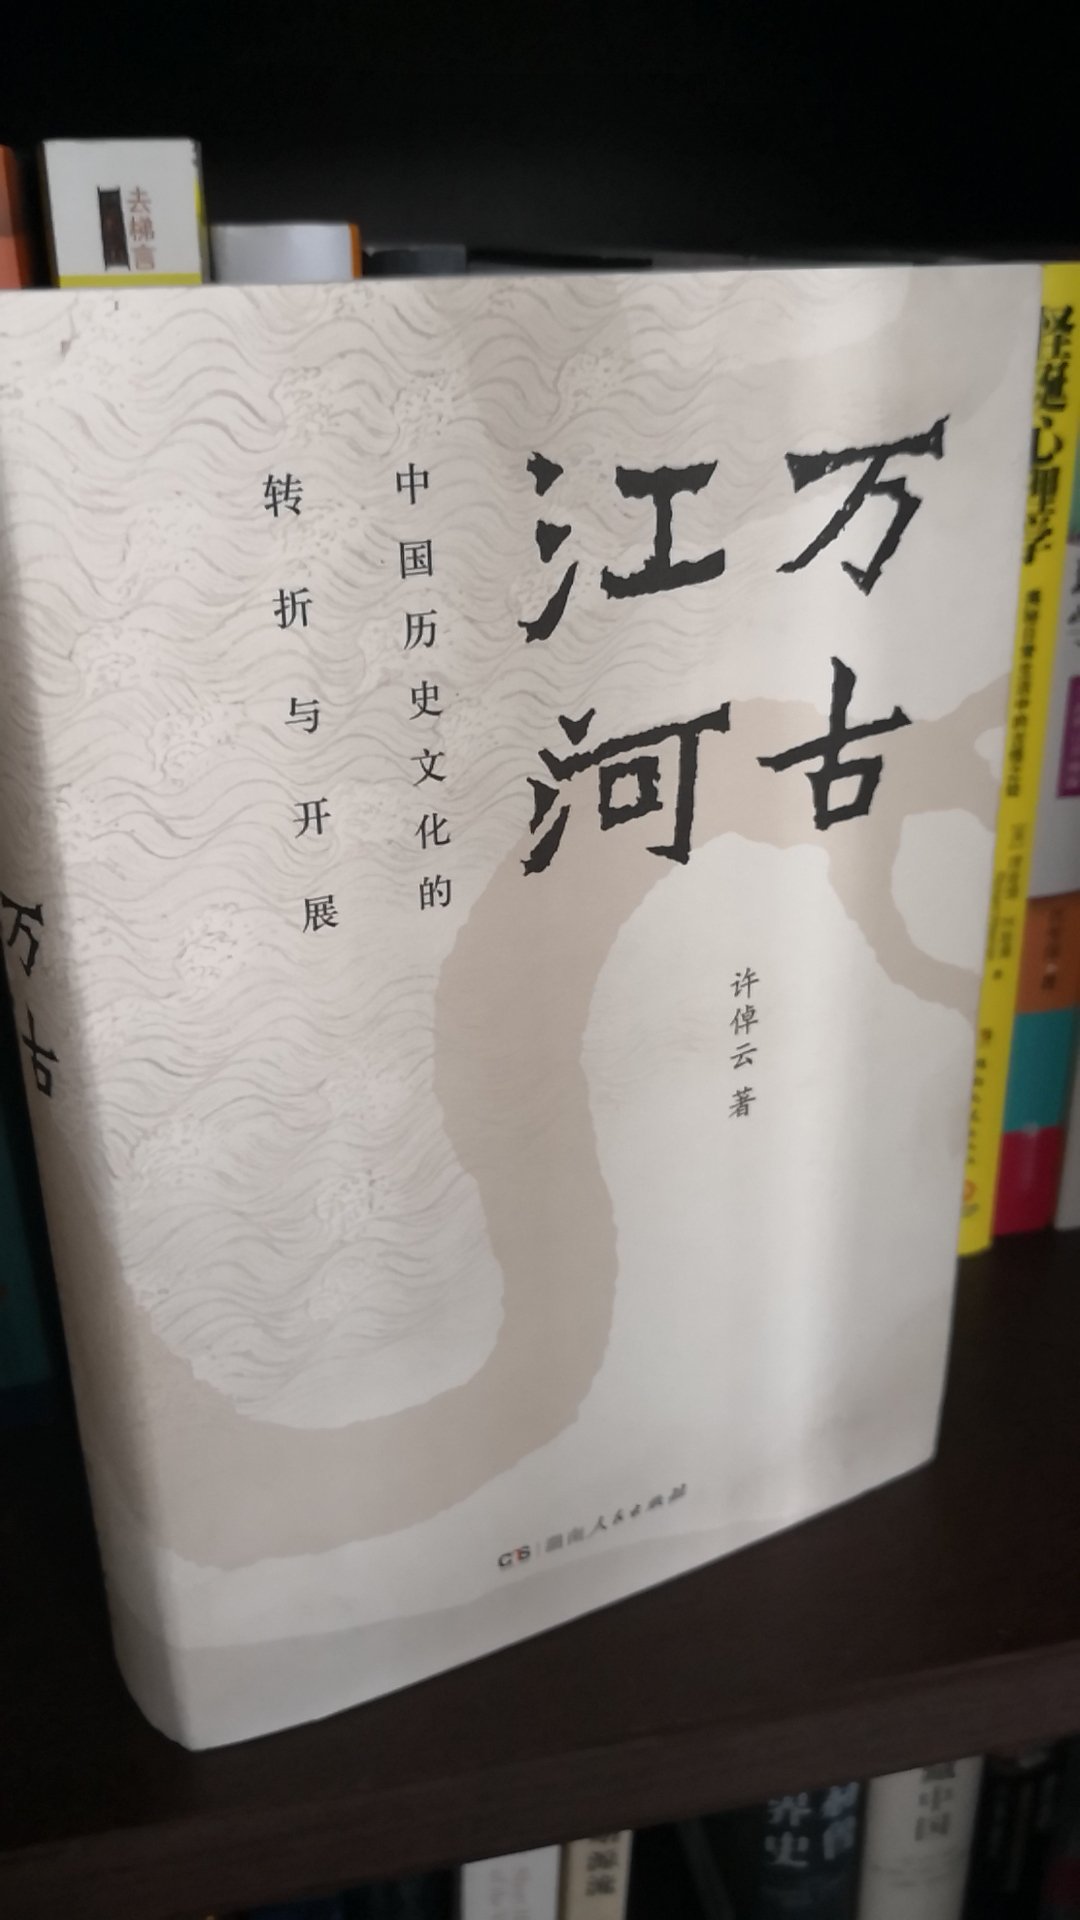 随便翻了翻，很不错的一本书，讲透了中国历史文化。